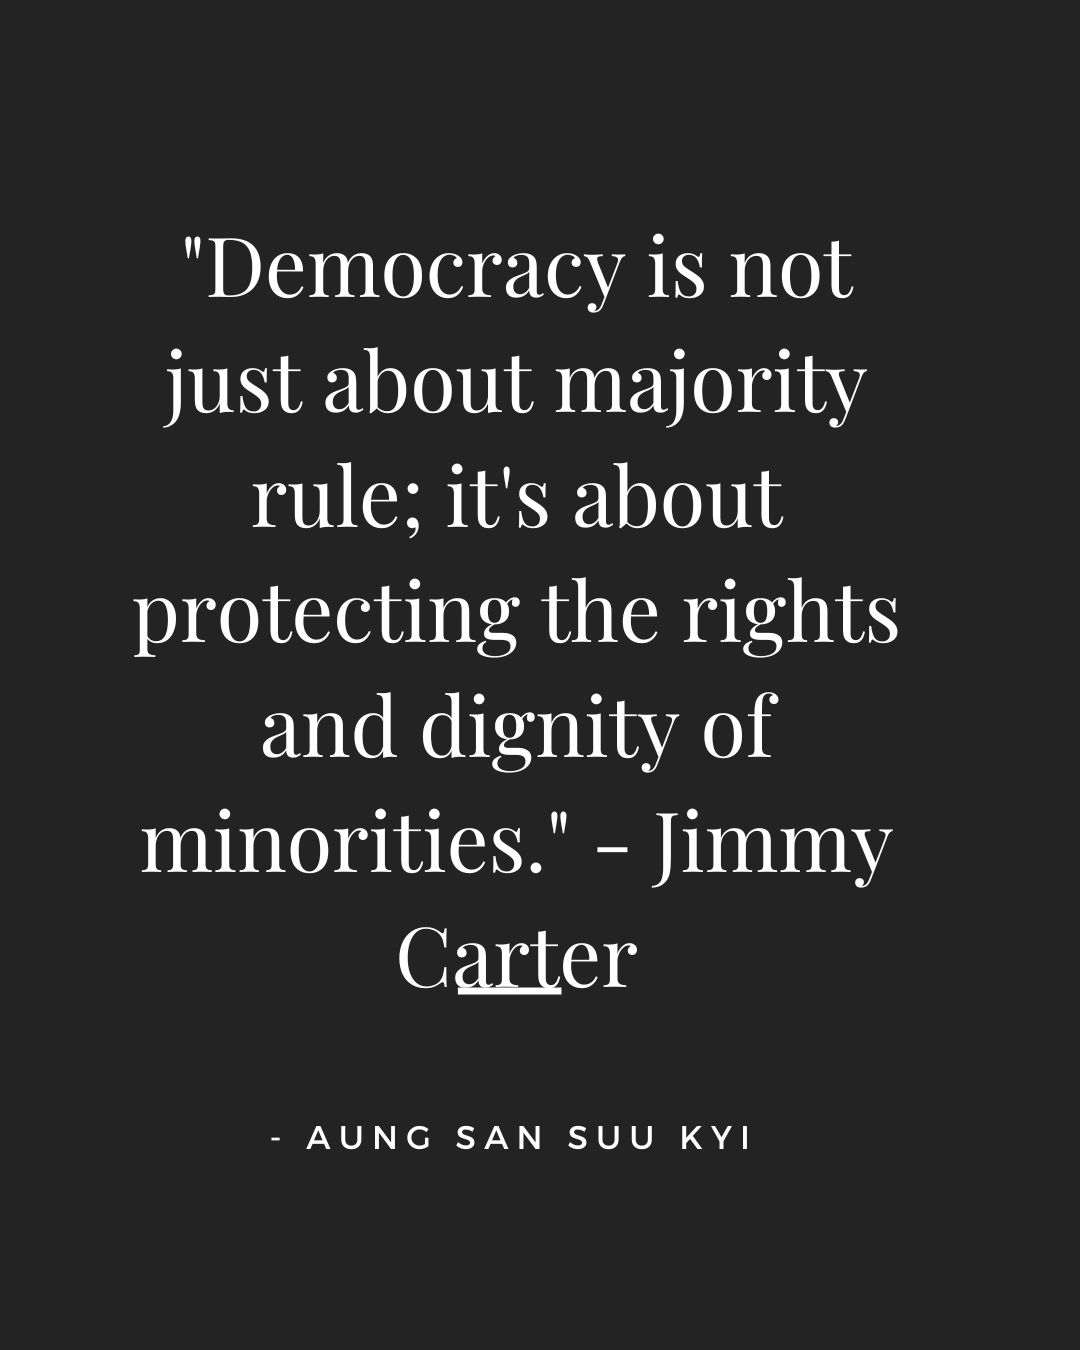 Quotes on Democracy